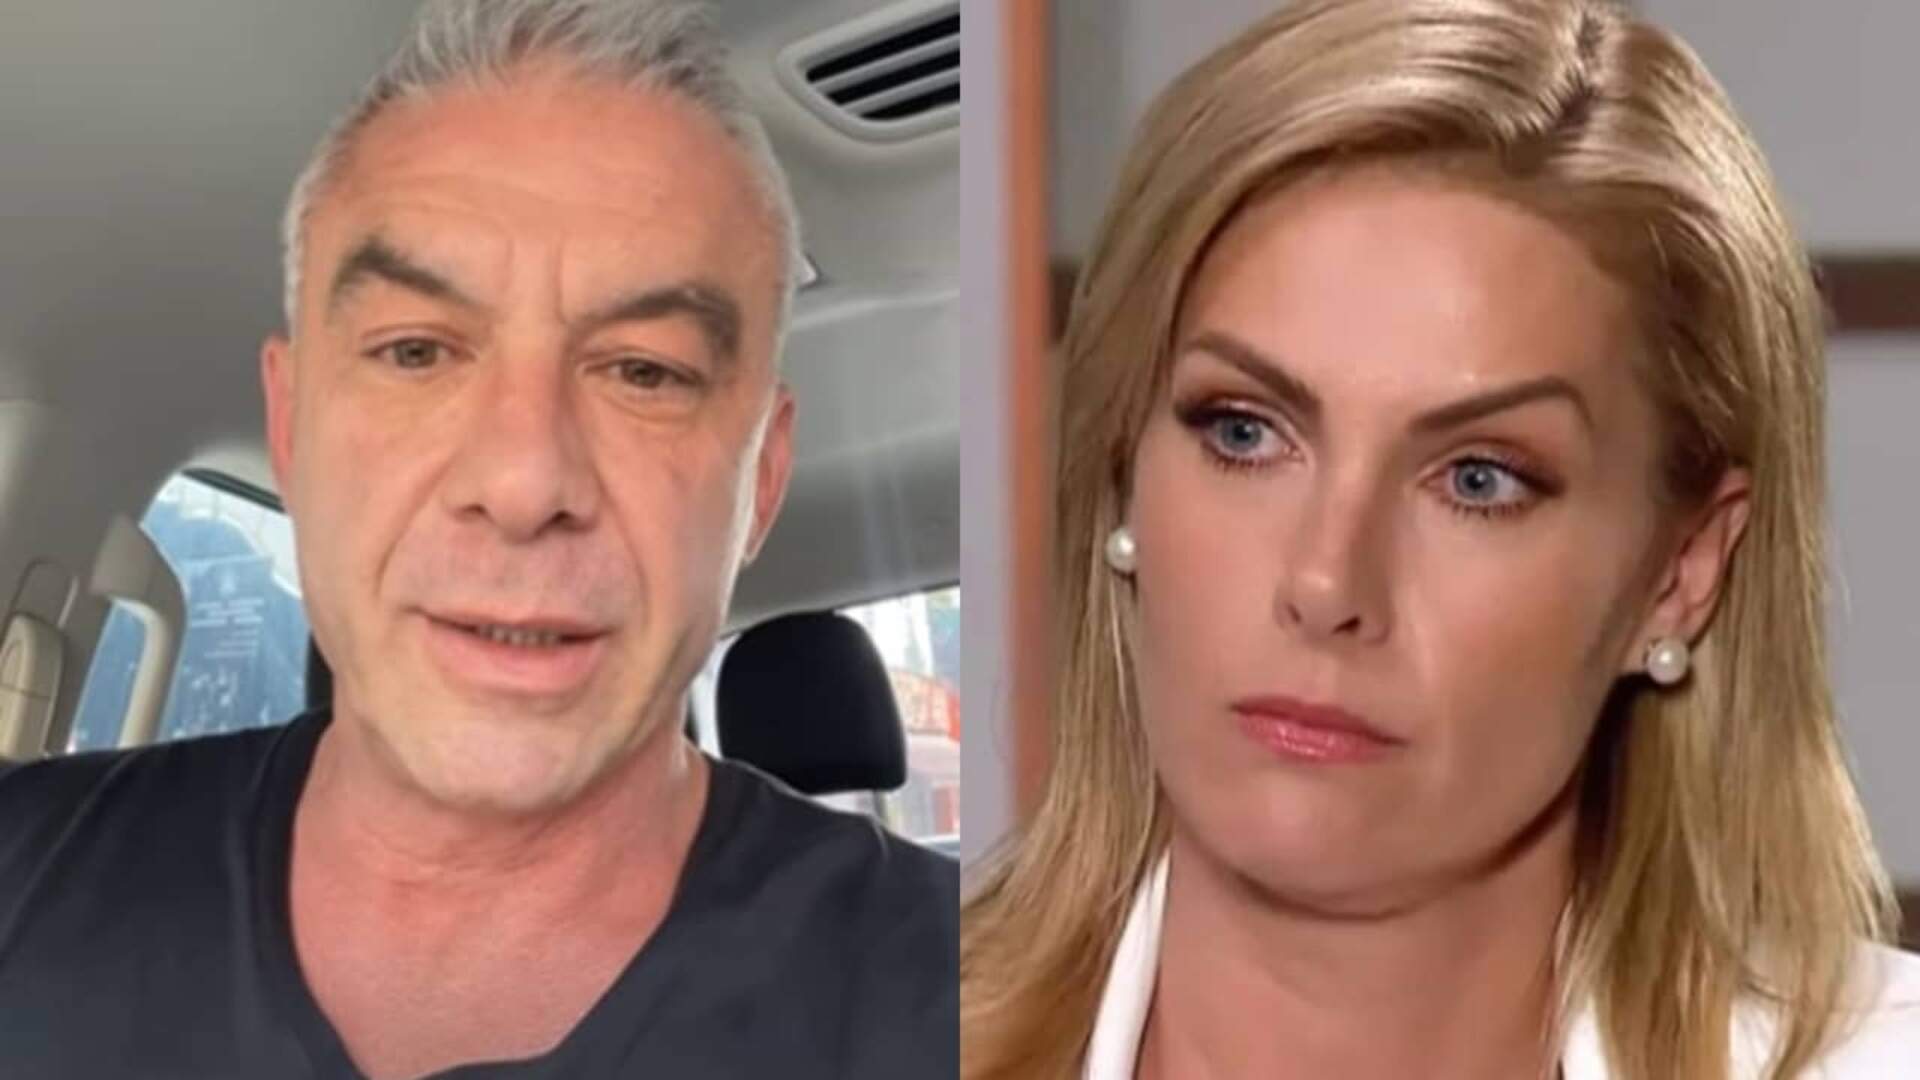 RESULTADO: Perícia confirma que Alexandre Correa desviou valor milionário de Ana Hickmann; Veja quanto foi! - Metropolitana FM